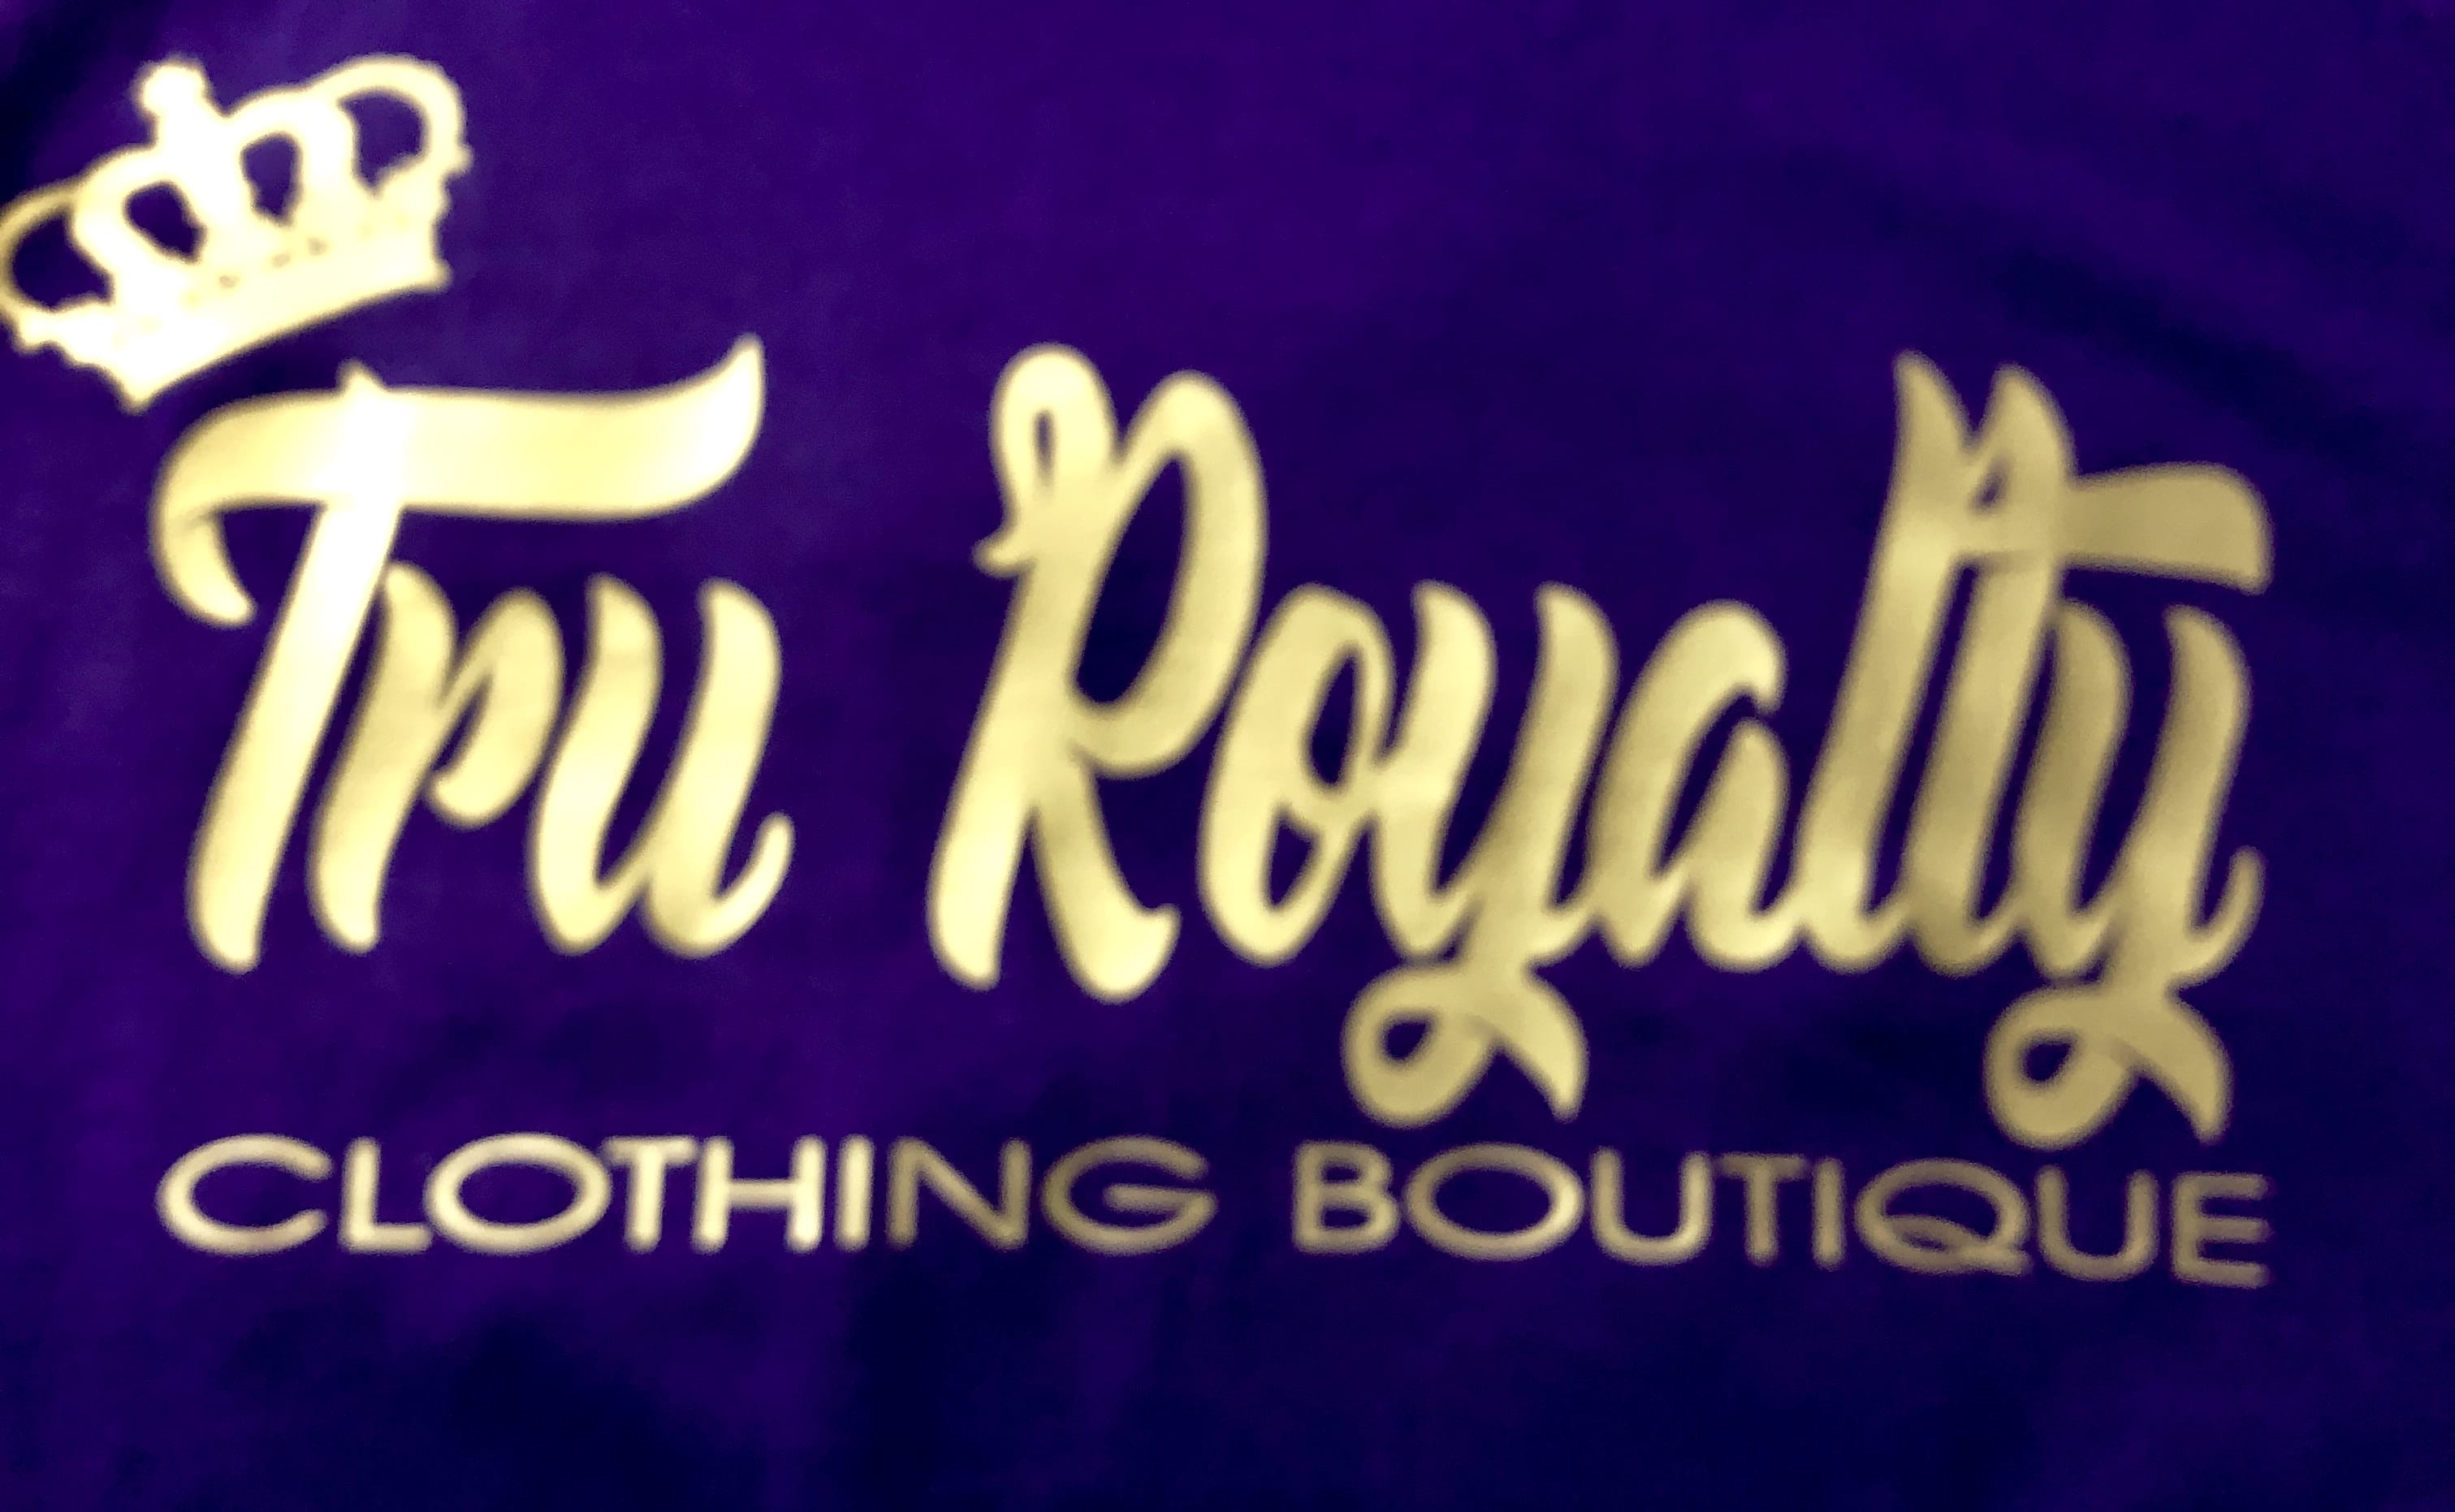 Tru Royalty Boutique